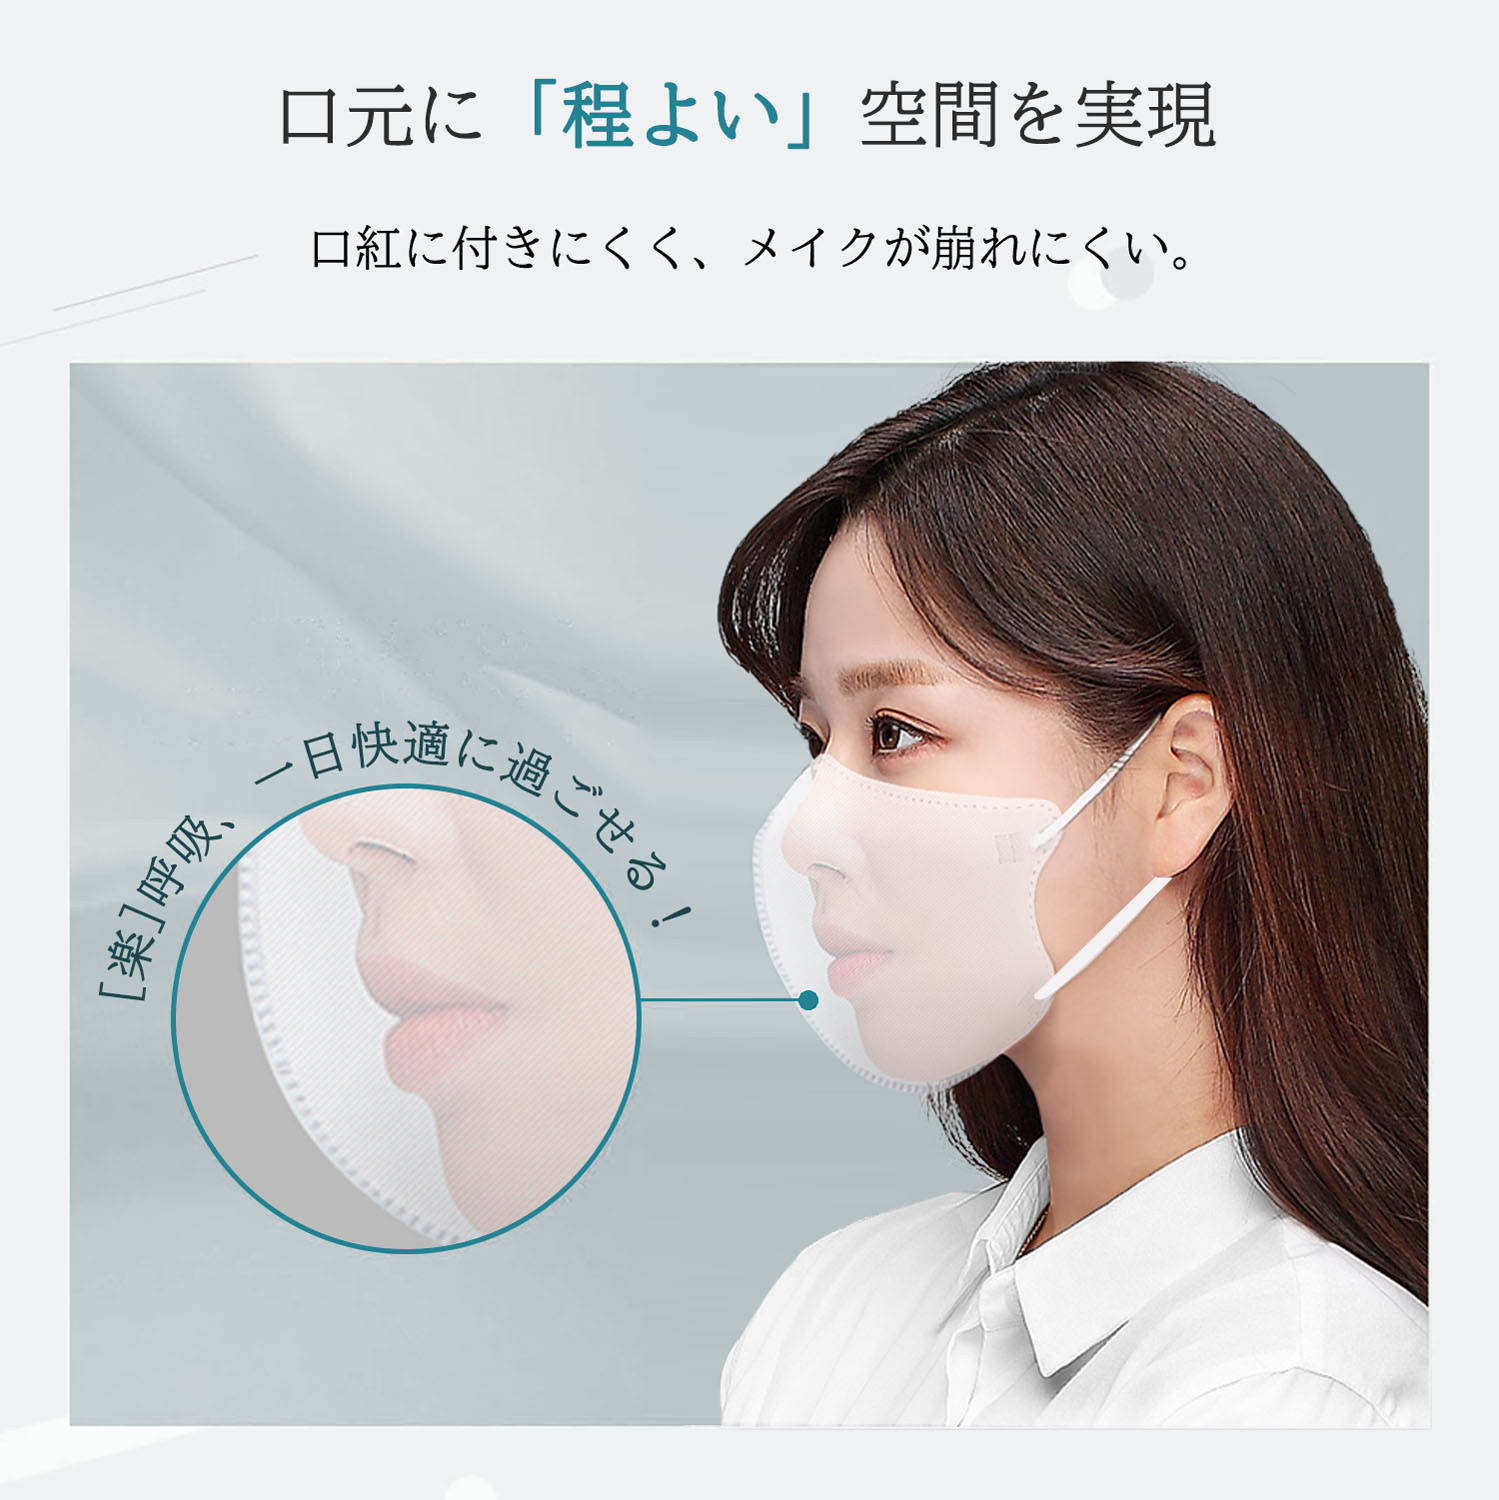 立体マスク 3D 不織布 日本製 カラー くちばし 10枚 小顔 使い捨て メガネが曇りにくい 呼吸しやすい 口紅に付かない 耳が痛くならない 熱中症対策917544